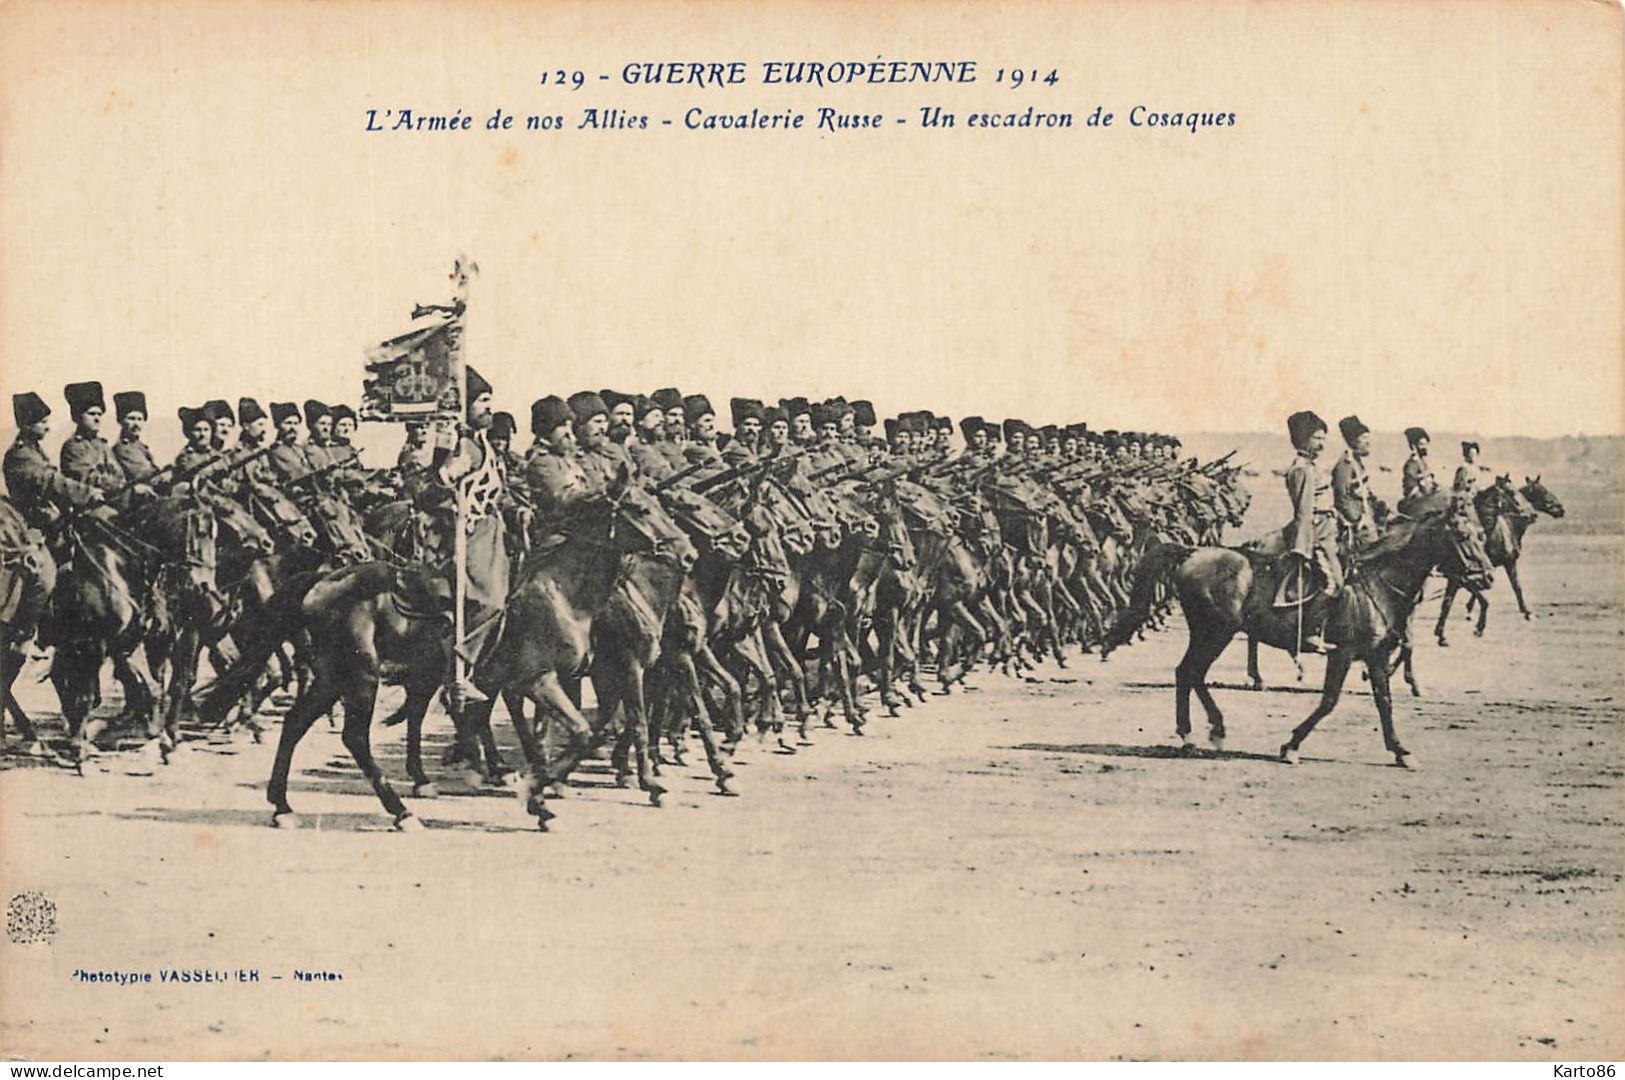 Militaria * Guerre Européenne 1914 * Armée Alliés , Cavalerie Russe , Escadron Cosaques * Russia Russie Ww1 14/18 War - Guerre 1914-18